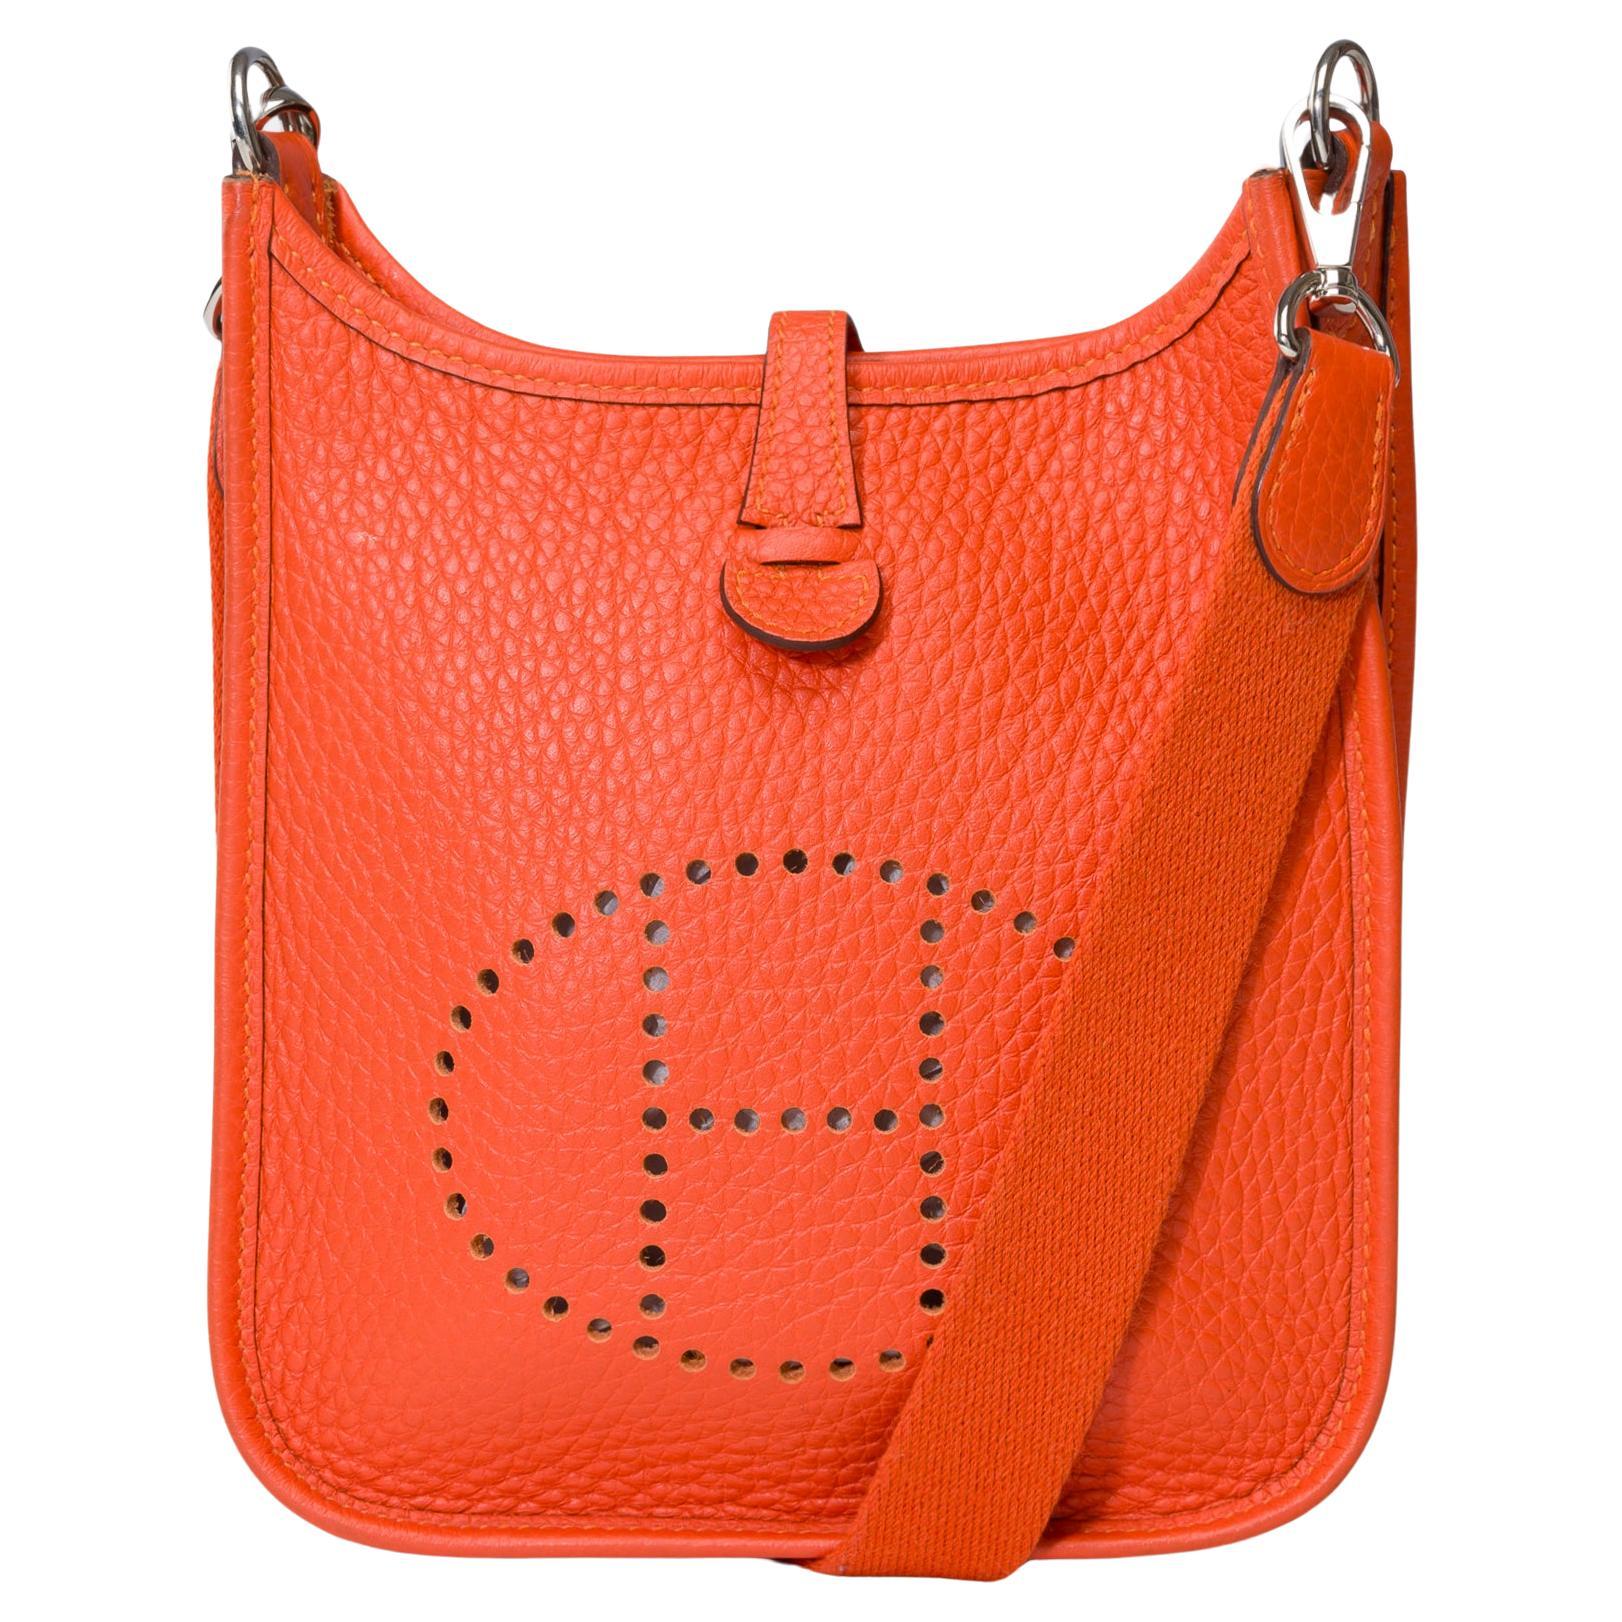 Hermès Evelyne 16 TPM shoulder bag in Taurillon Clemence Orange feu leather, SHW